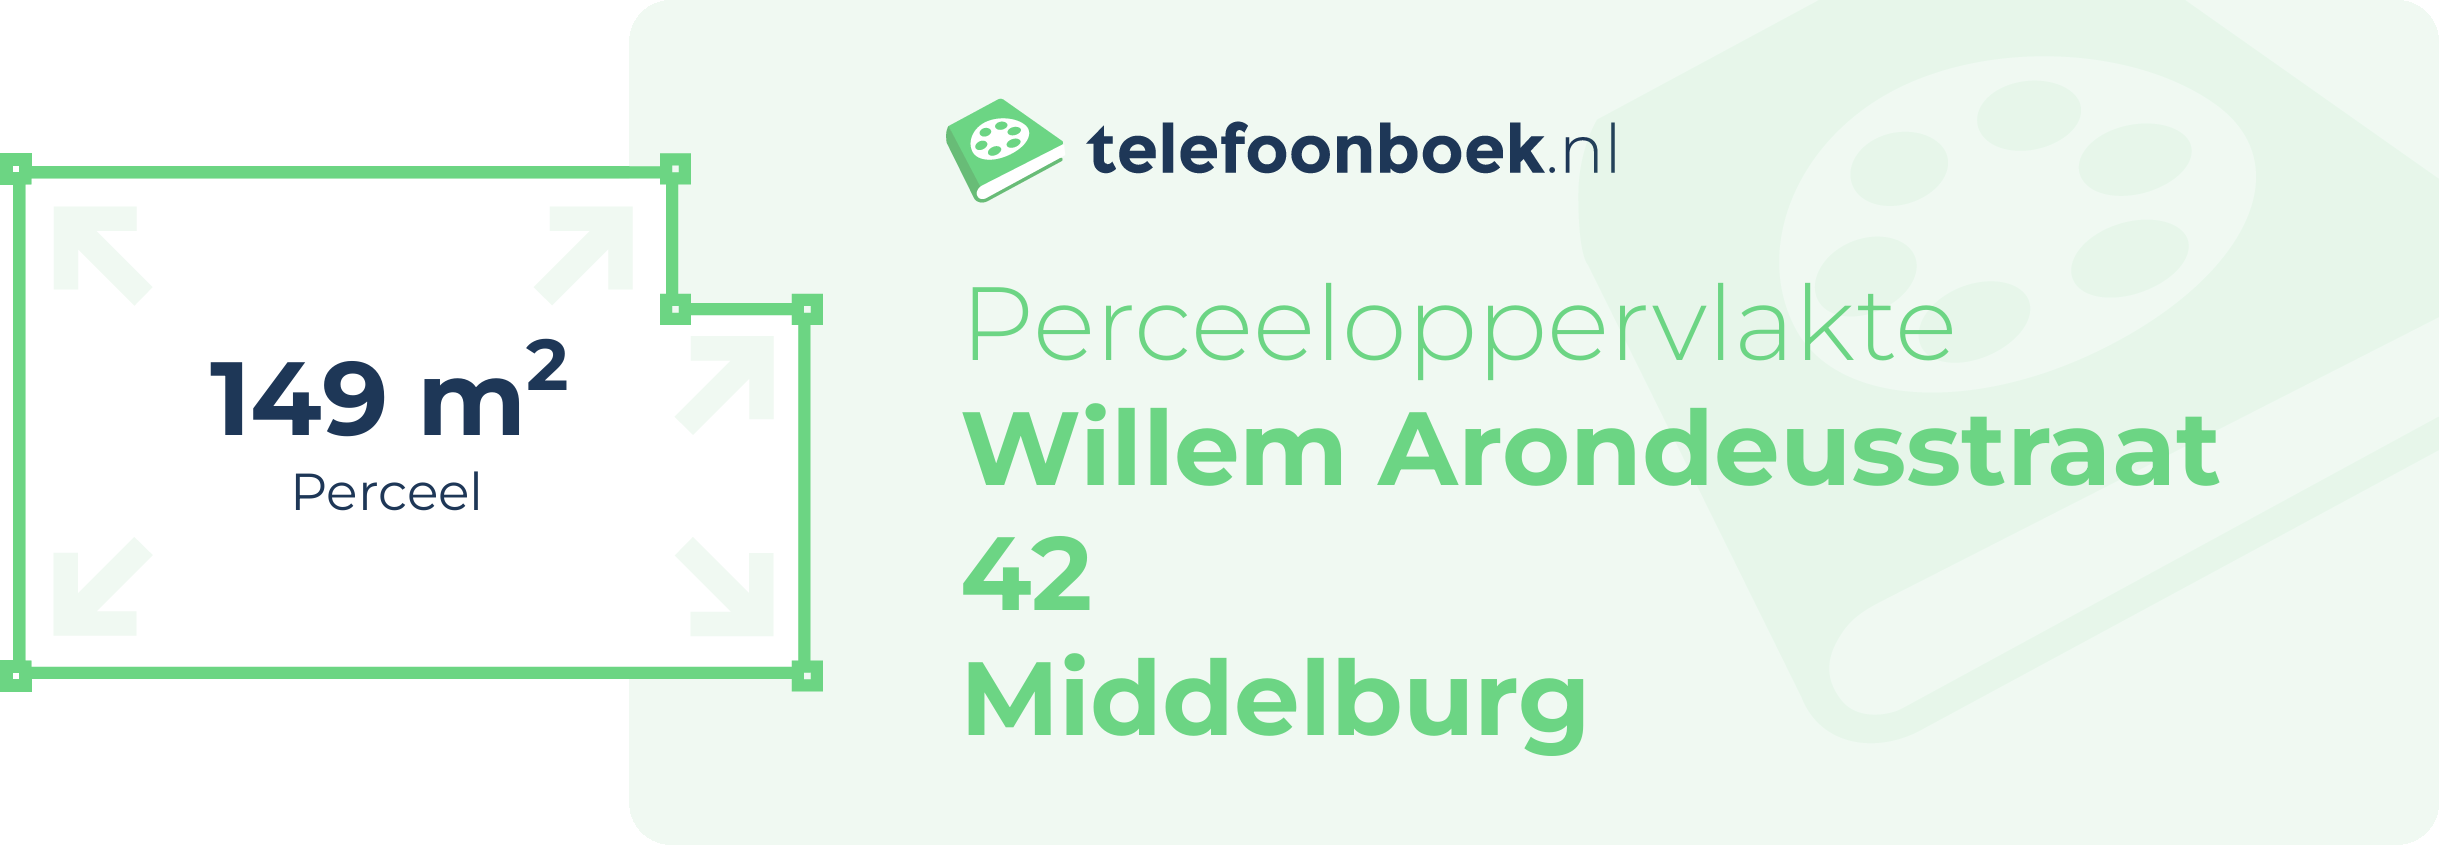 Perceeloppervlakte Willem Arondeusstraat 42 Middelburg